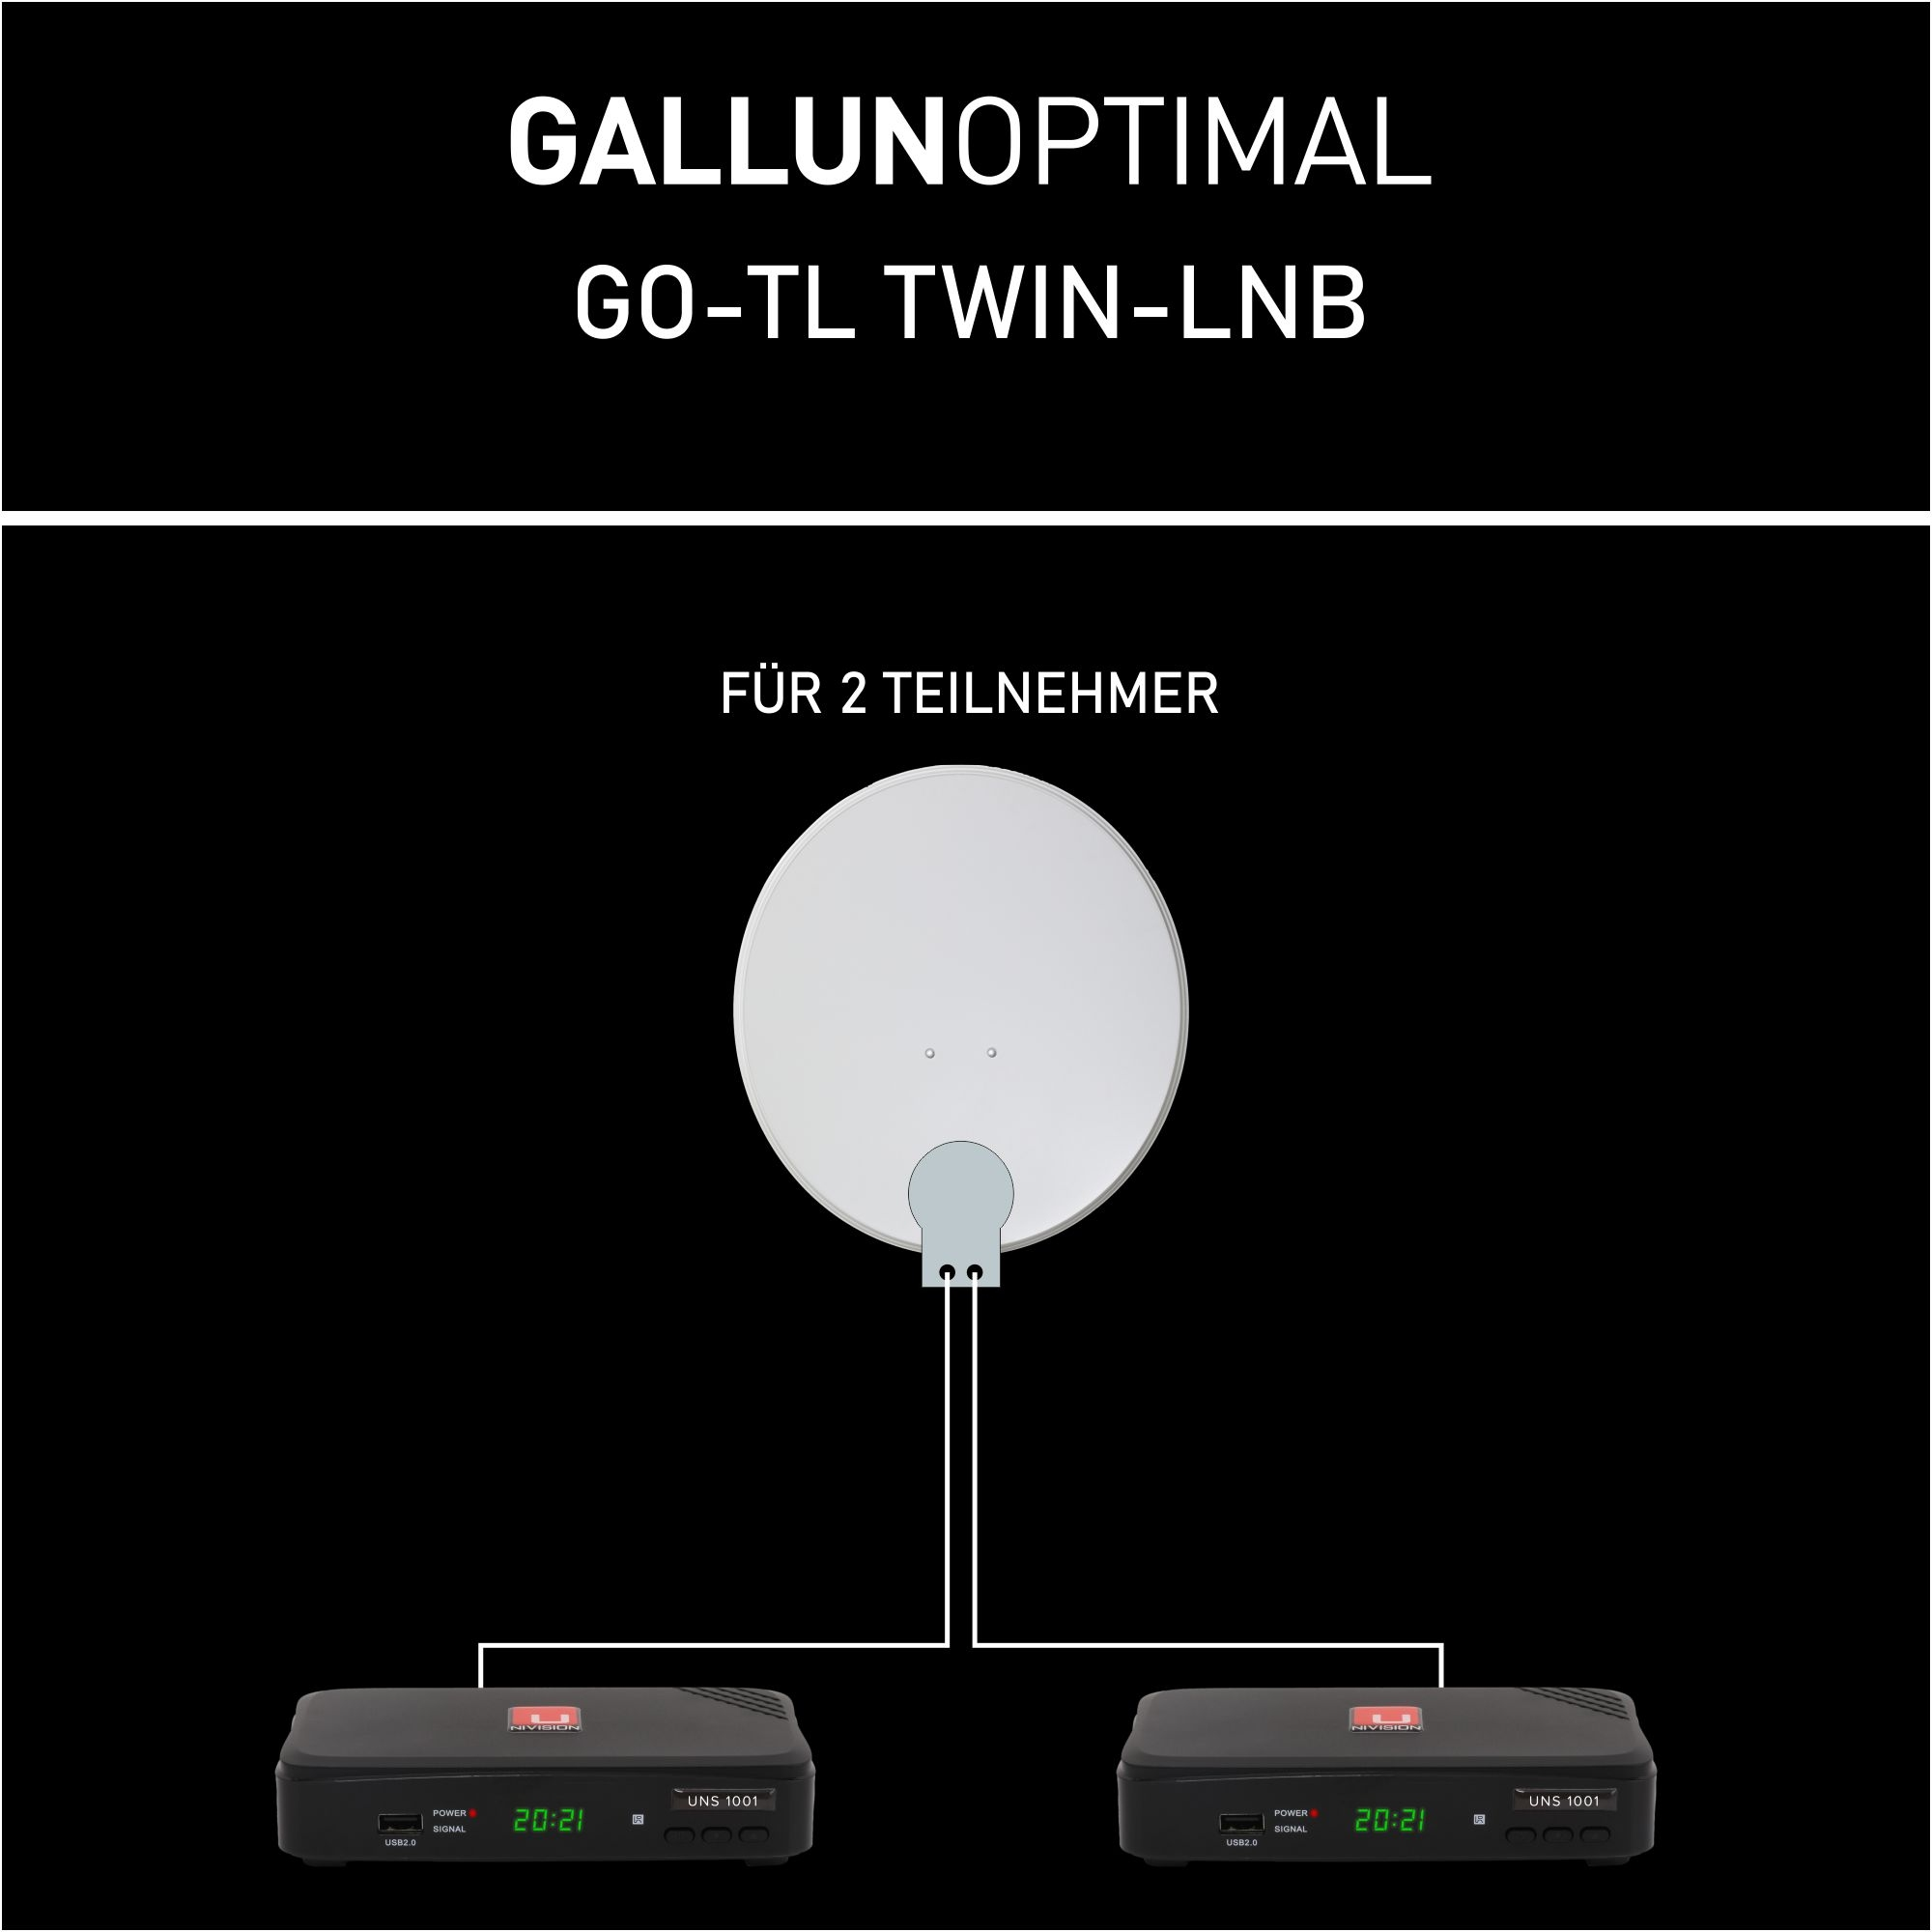 Twin Twin-LNB GALLUNOPTIMAL LNB